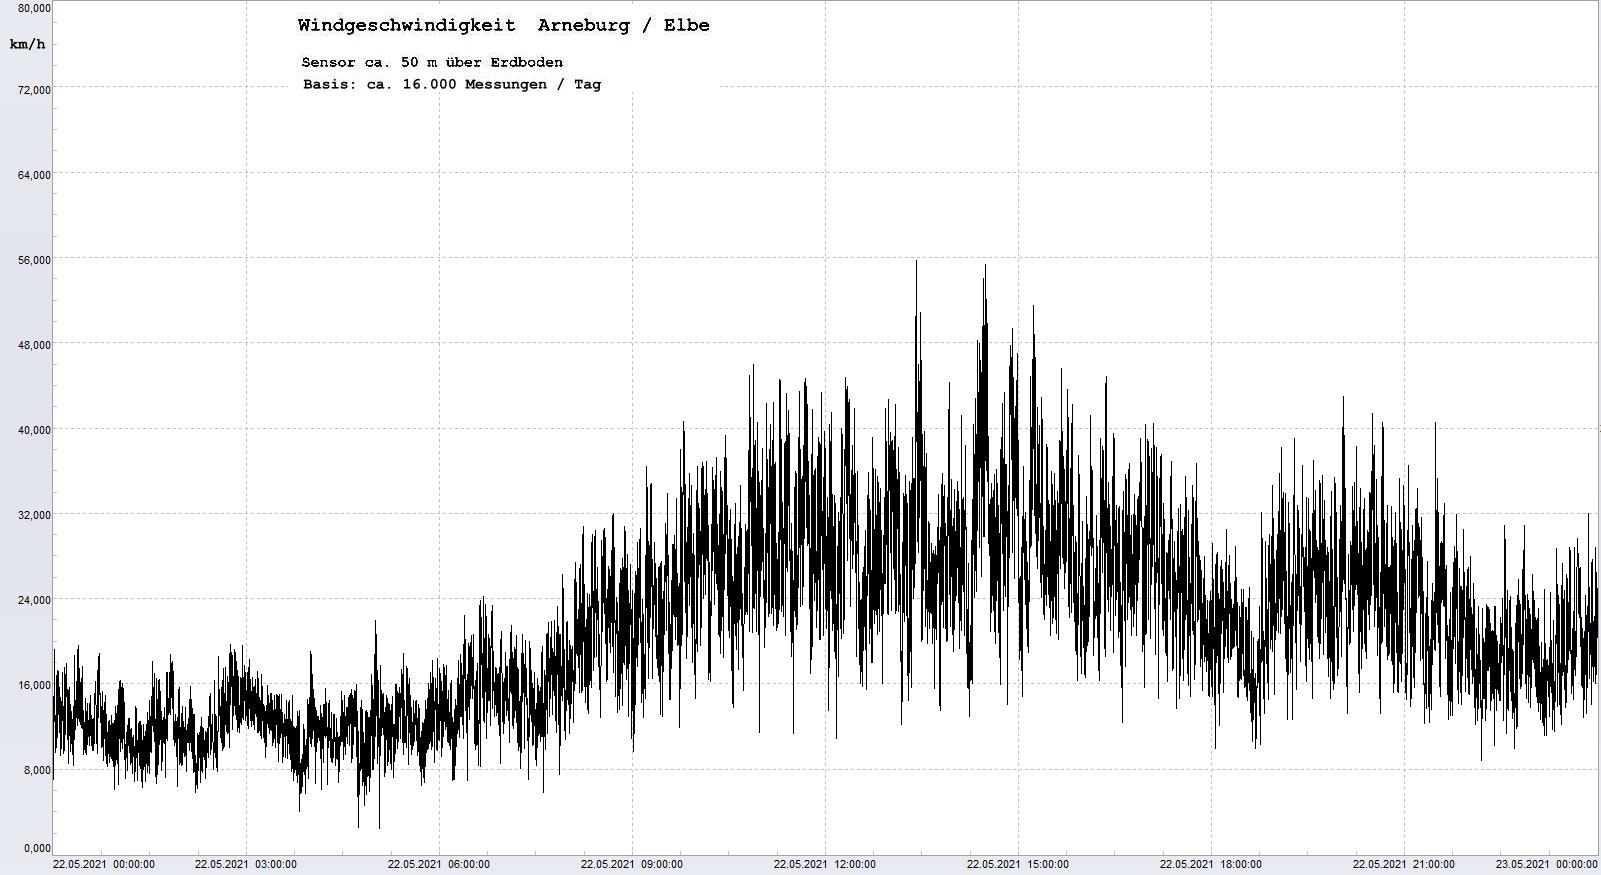 Arneburg Tages-Diagramm Winddaten, 22.05.2021
  Diagramm, Sensor auf Gebäude, ca. 50 m über Erdboden, Basis: 5s-Aufzeichnung